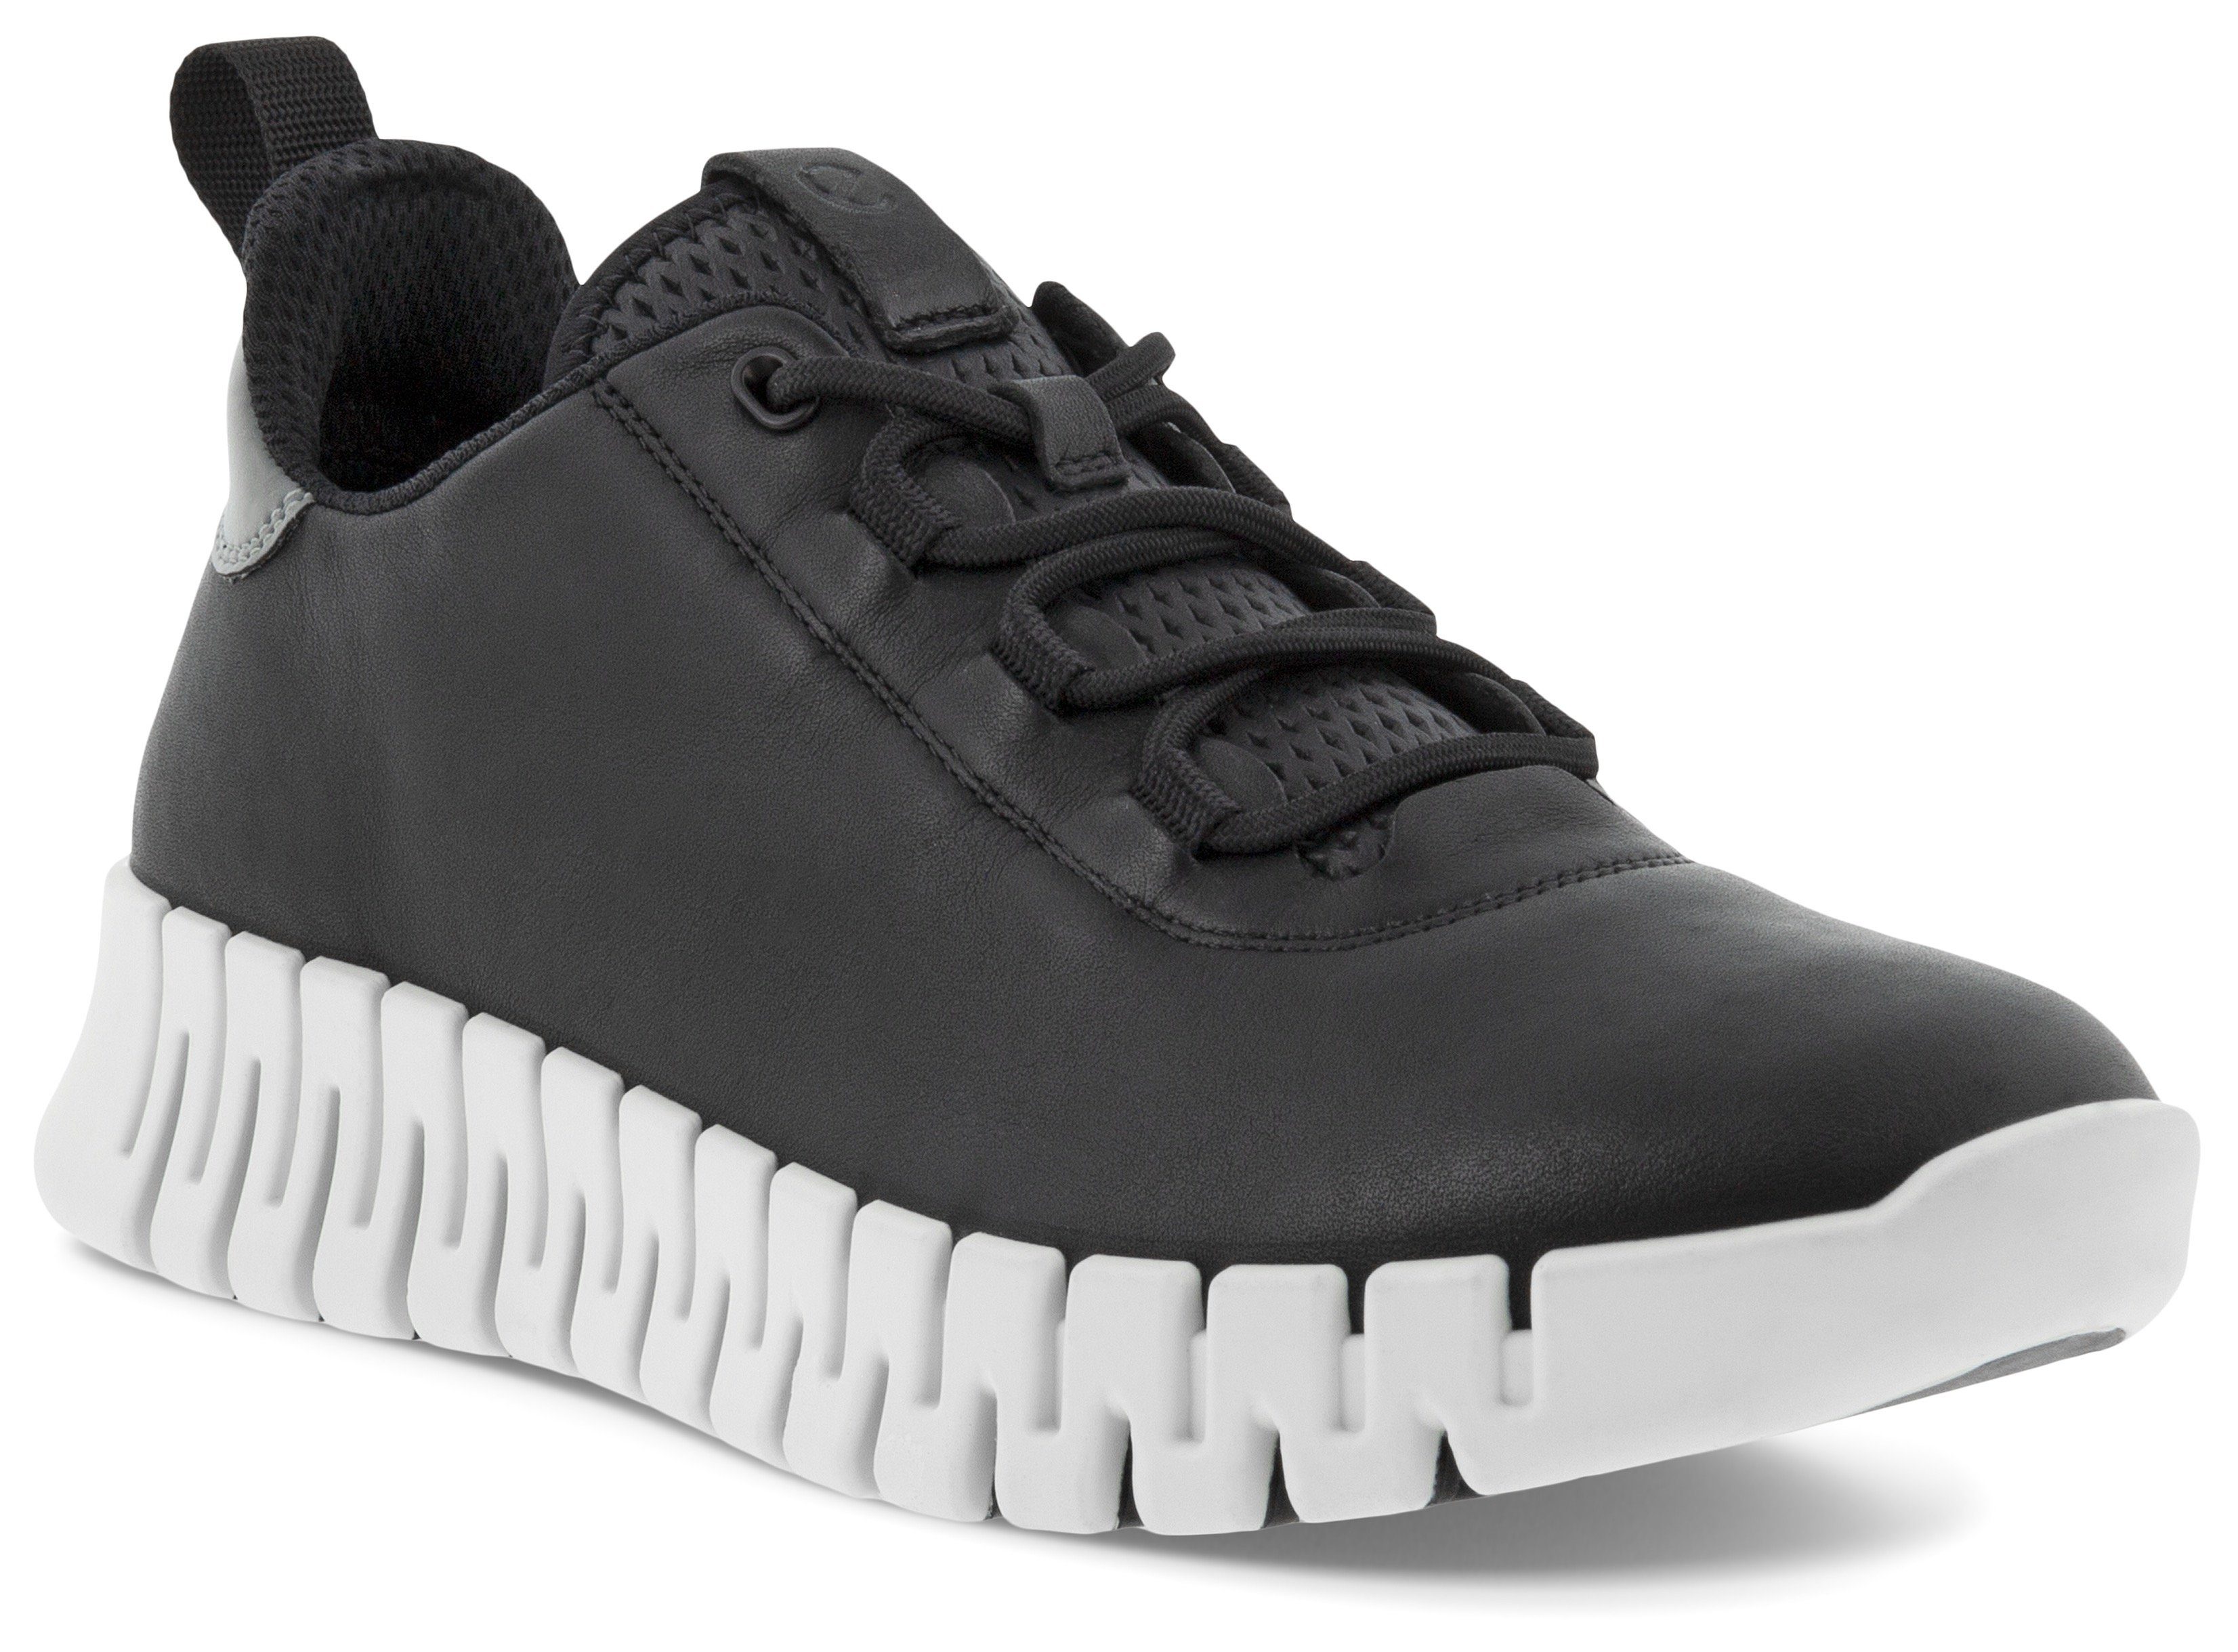 Ecco GRUUV Fluidform Sneaker W Sohle Slip-On mit schwarz ergonomischer